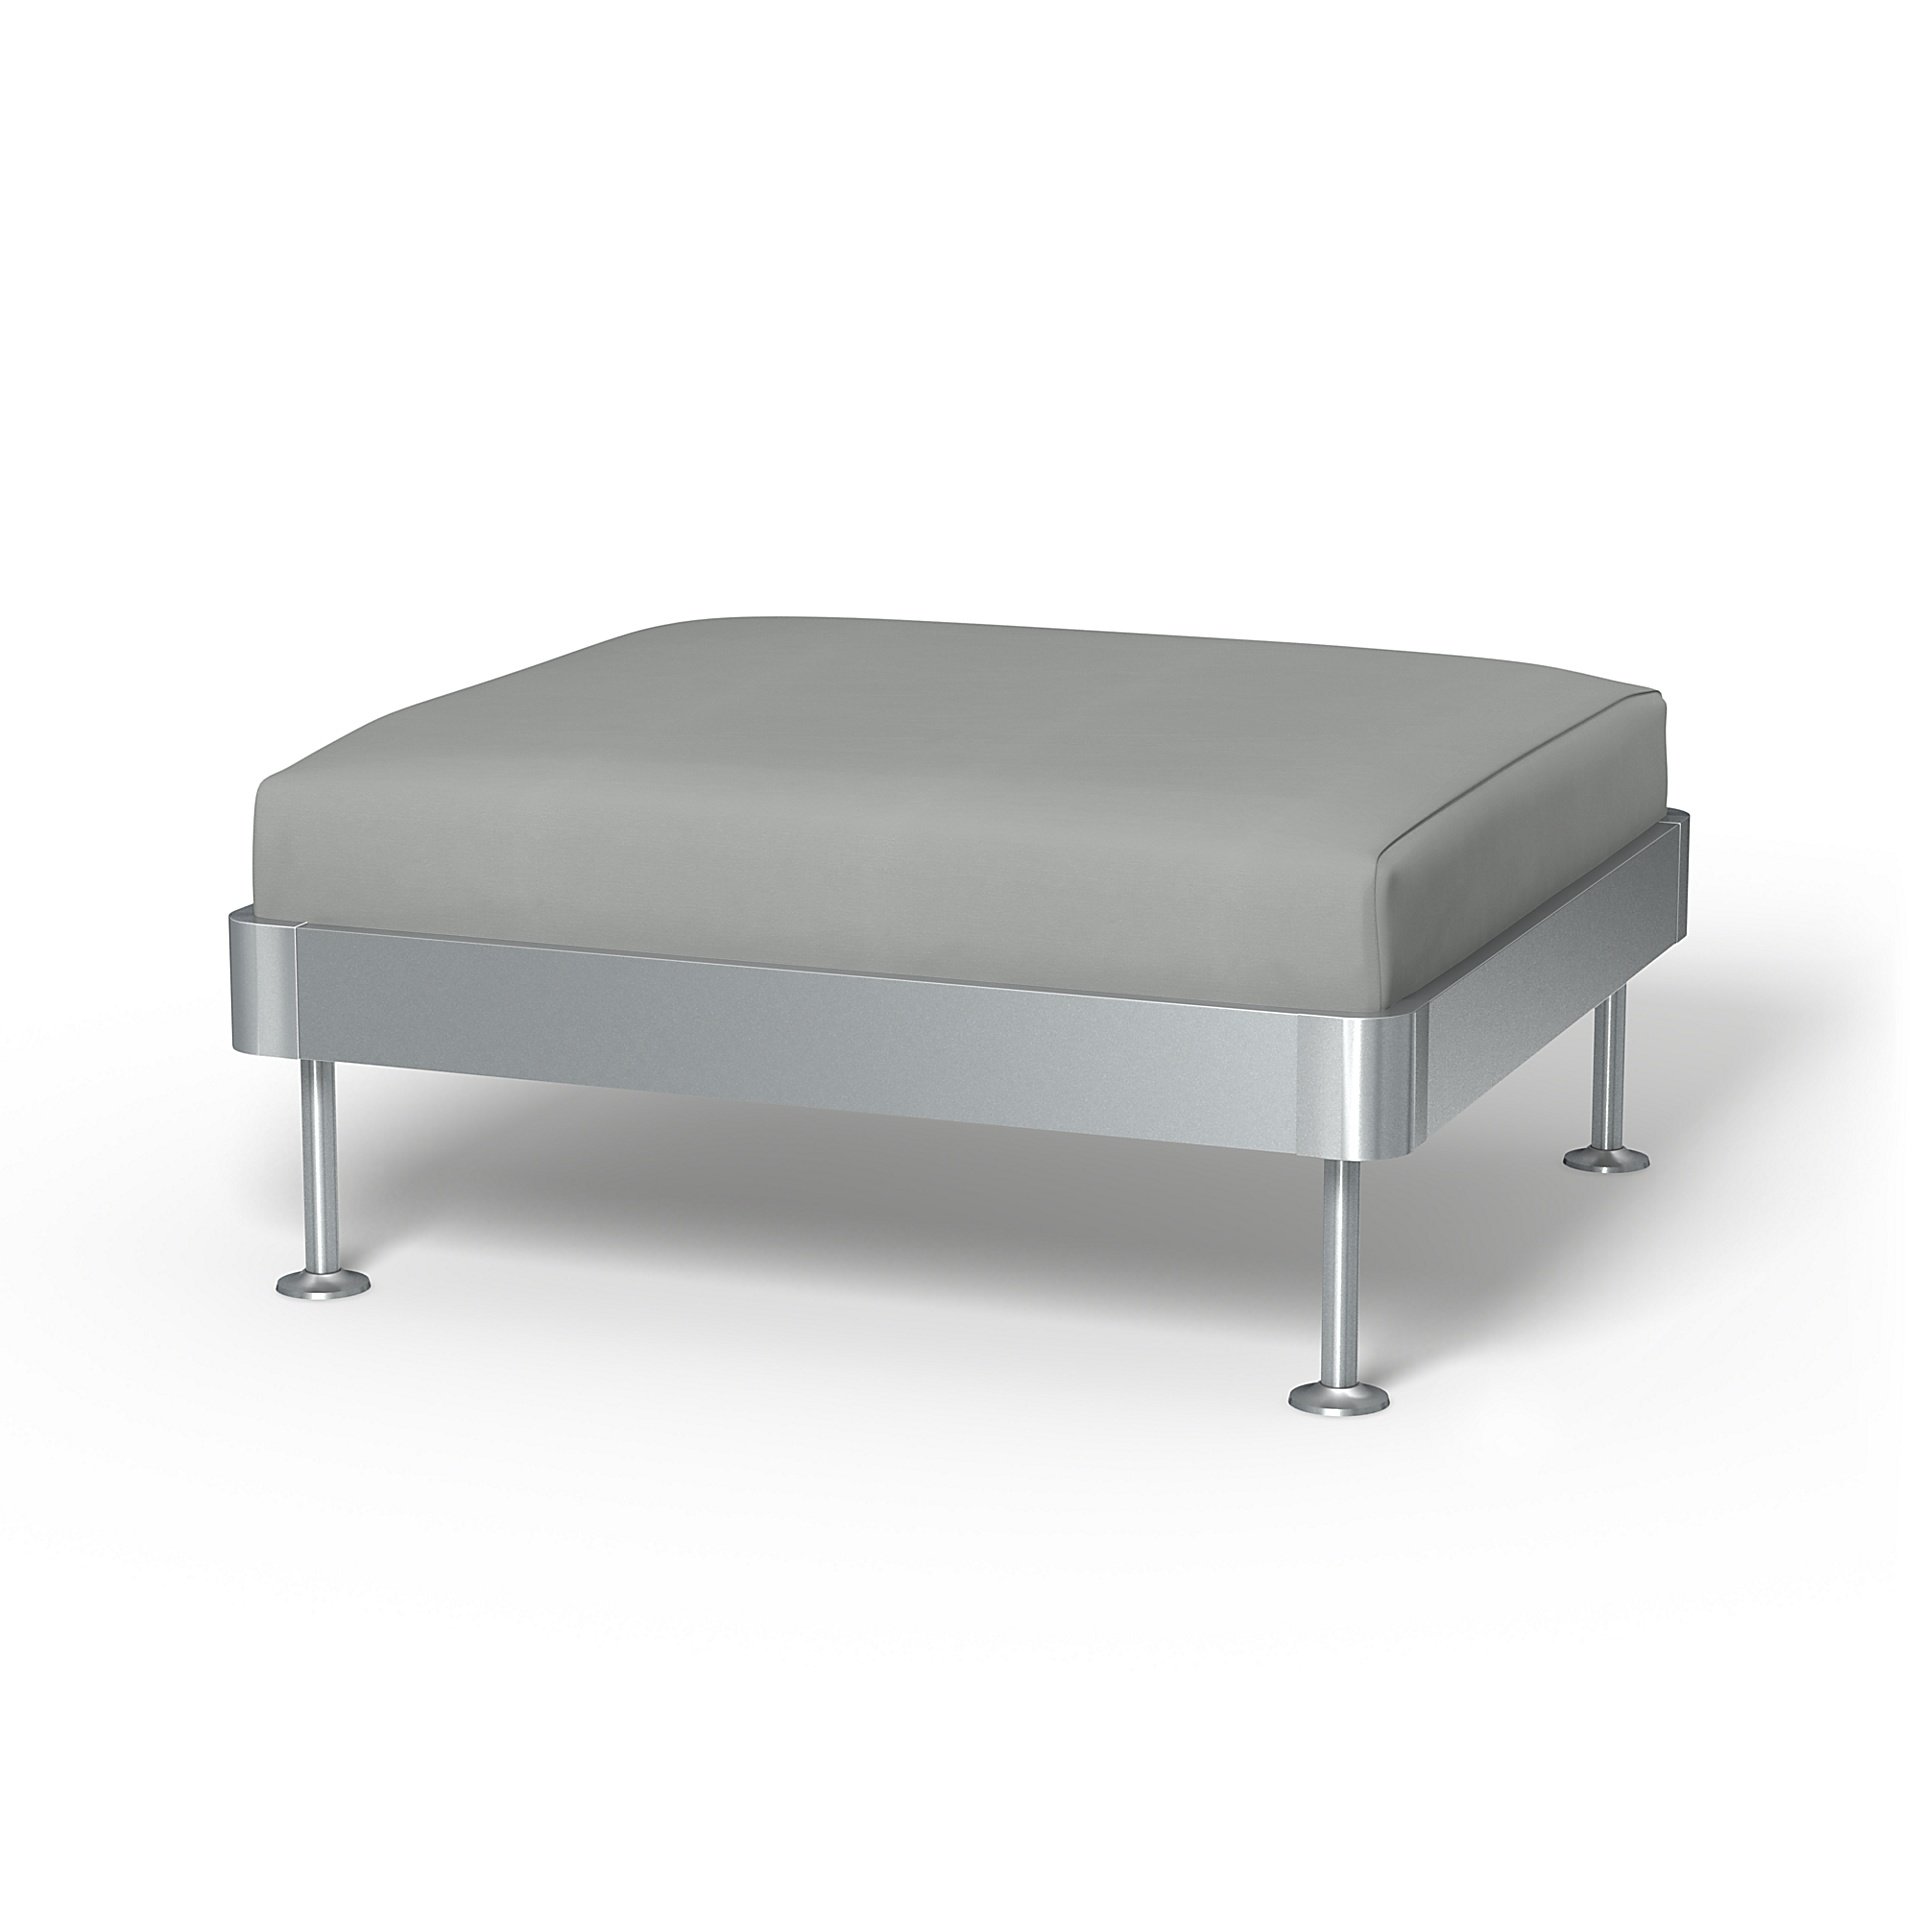 IKEA - Delaktig 1 Seat Platform Cover, Silver Grey, Cotton - Bemz